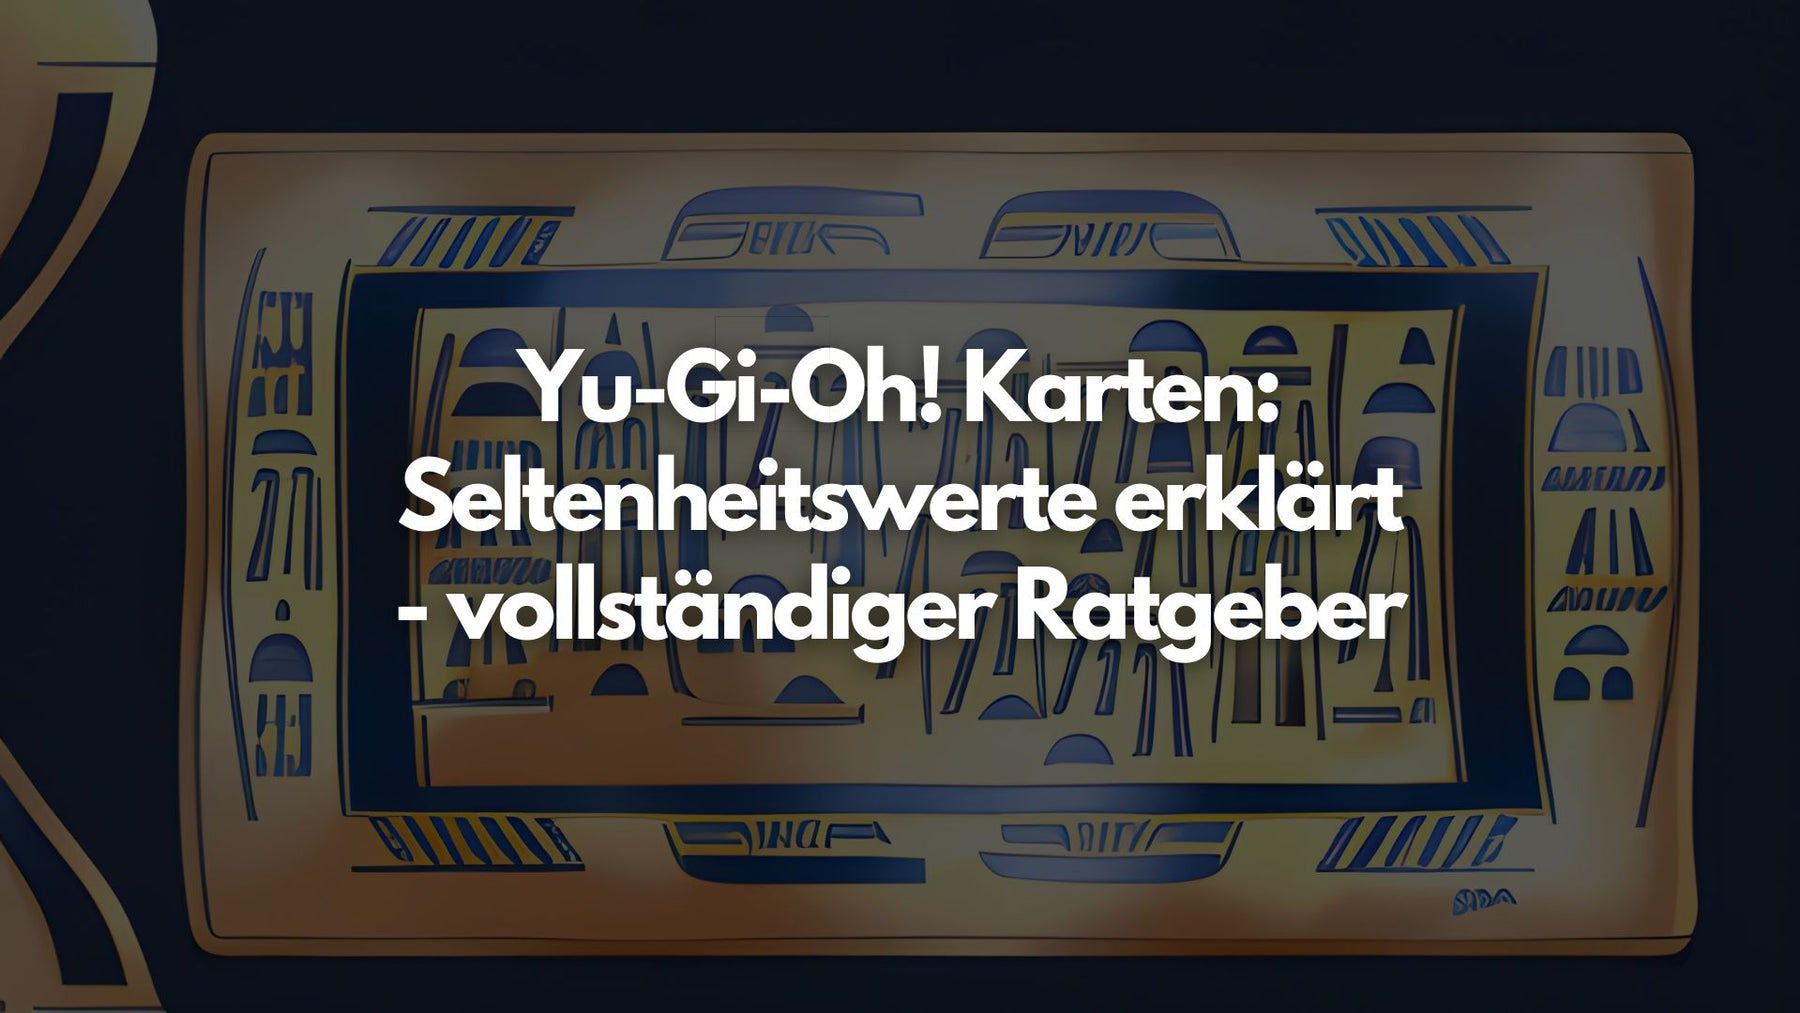 Yu-Gi-Oh! Karten: Seltenheitswerte erklärt - vollständiger Ratgeber